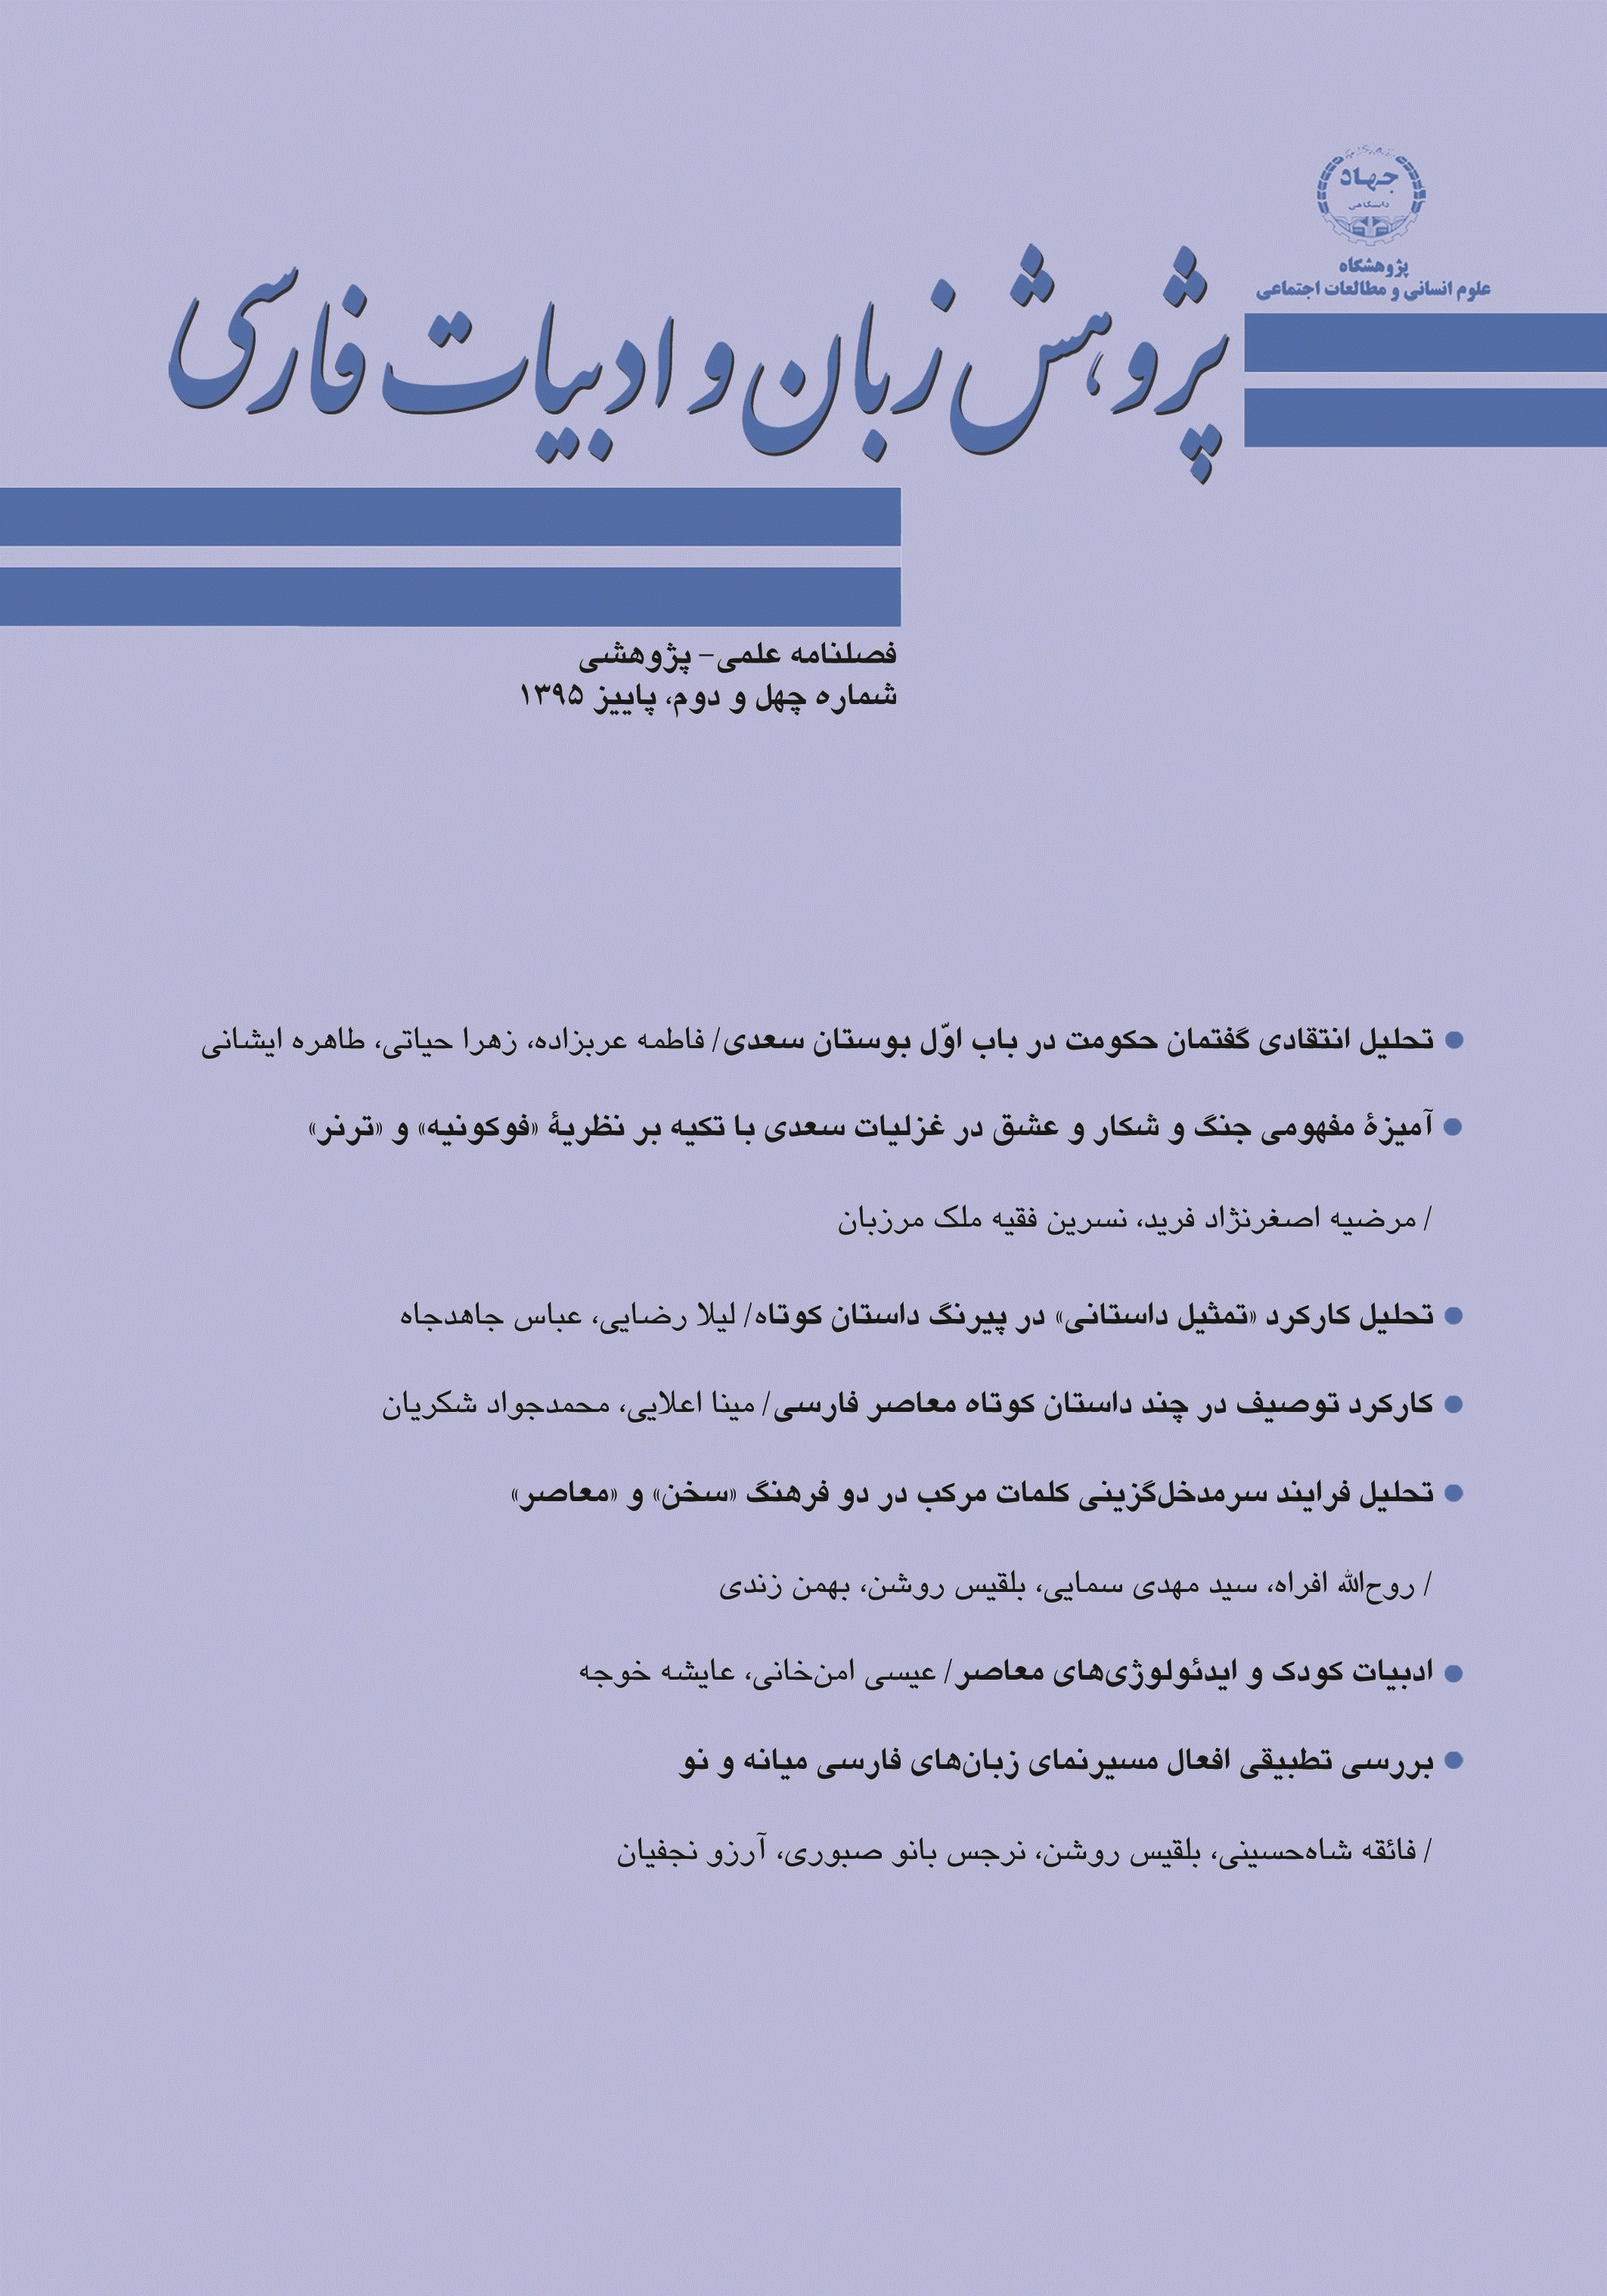 پژوهش زبان و ادبیات فارسی - پاییز 1395 - شماره 42